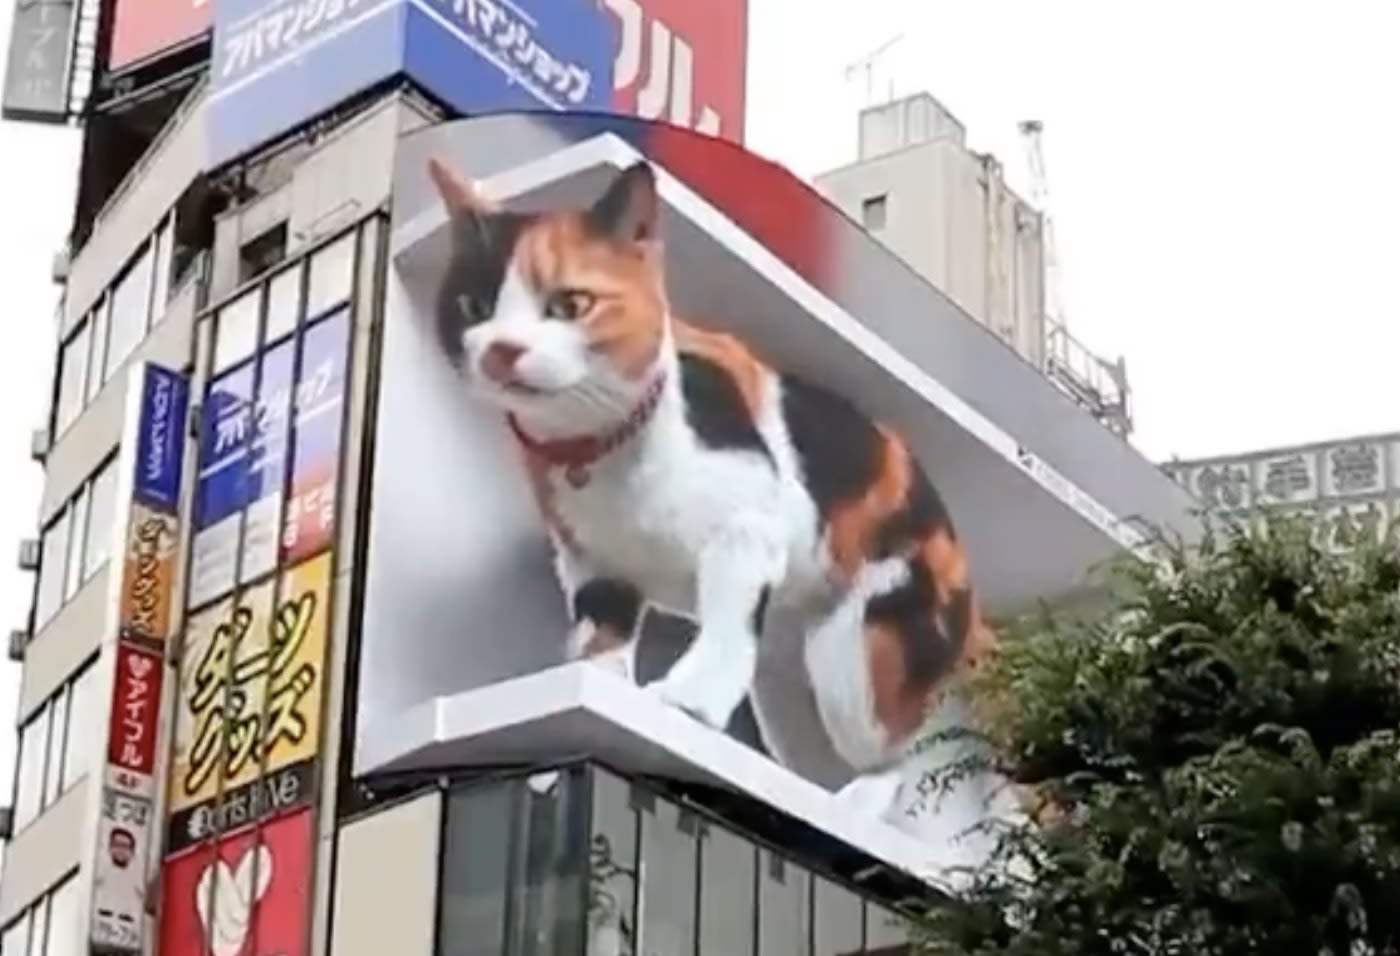 3D advertising calico cat billboard tokyo japan